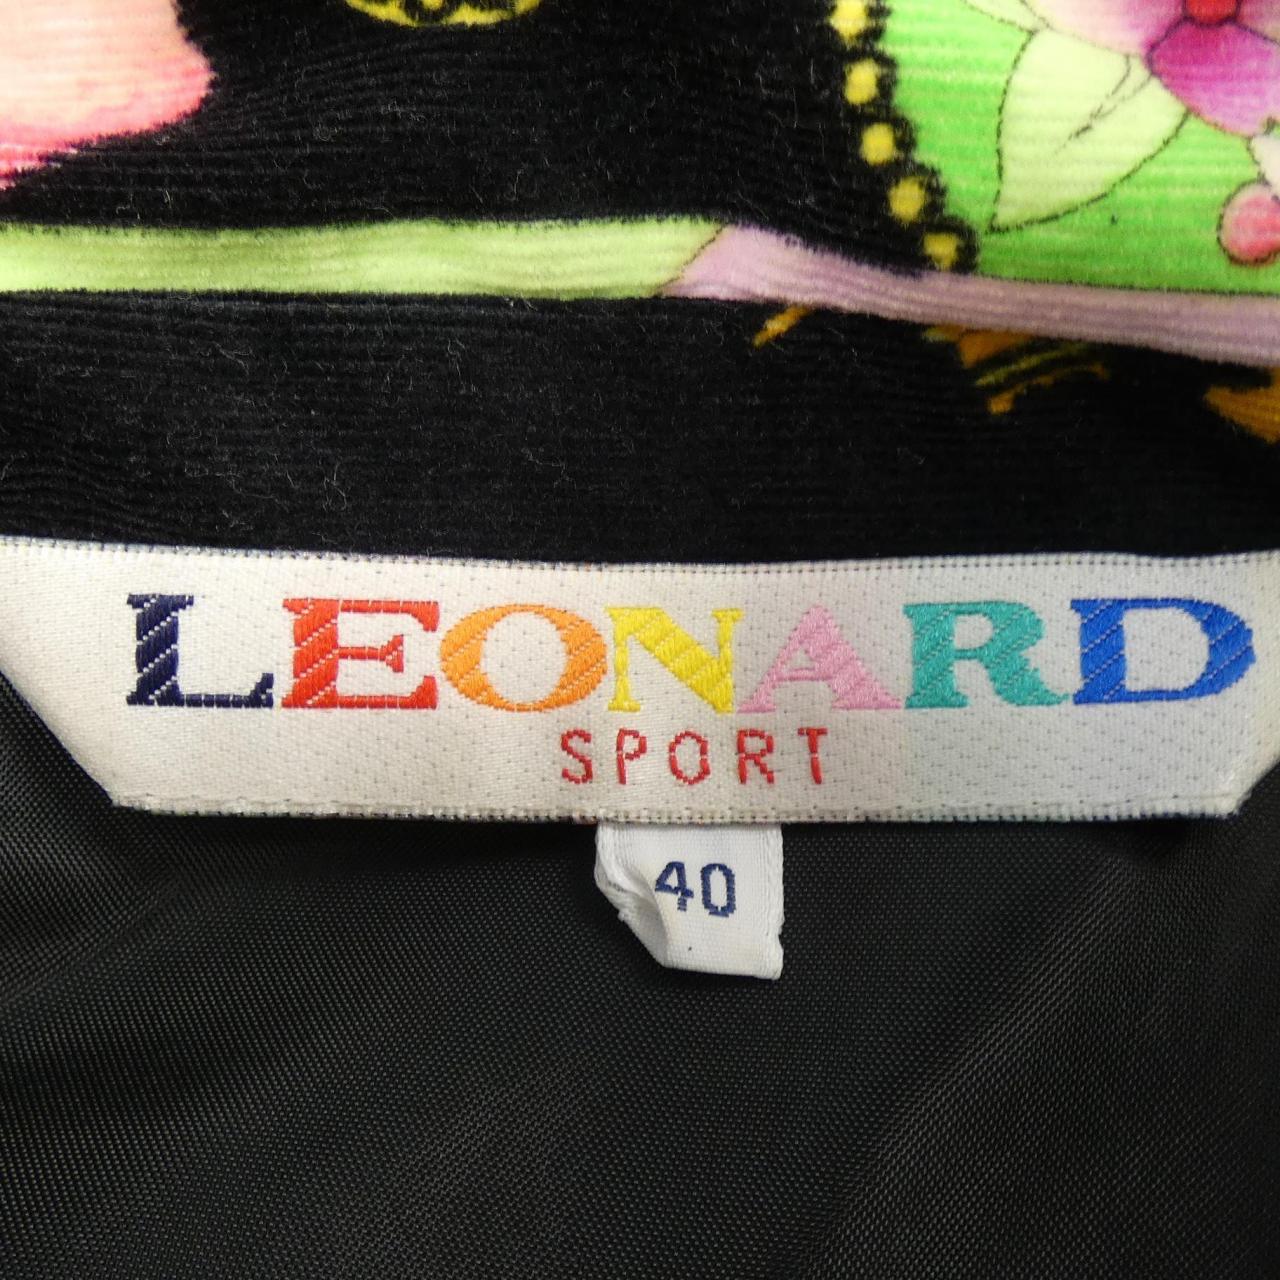 レオナールスポーツ LEONARD SPORT シャツ